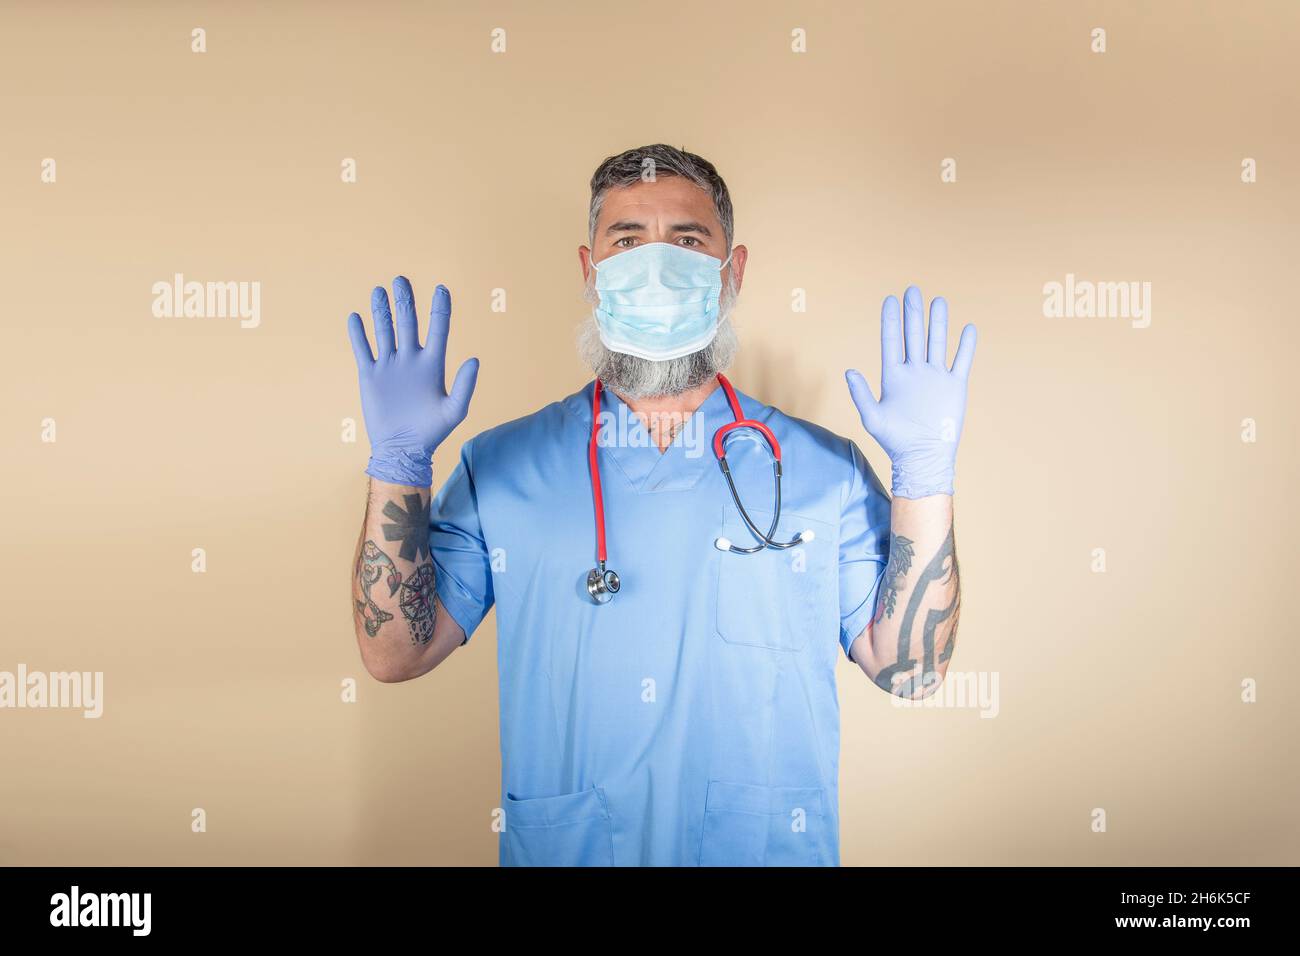 Ritratto del medico gesturante mentre in piedi contro parete background.Health lavoratori, covid-19, coronavirus e virus prevenzione concetto. Foto Stock